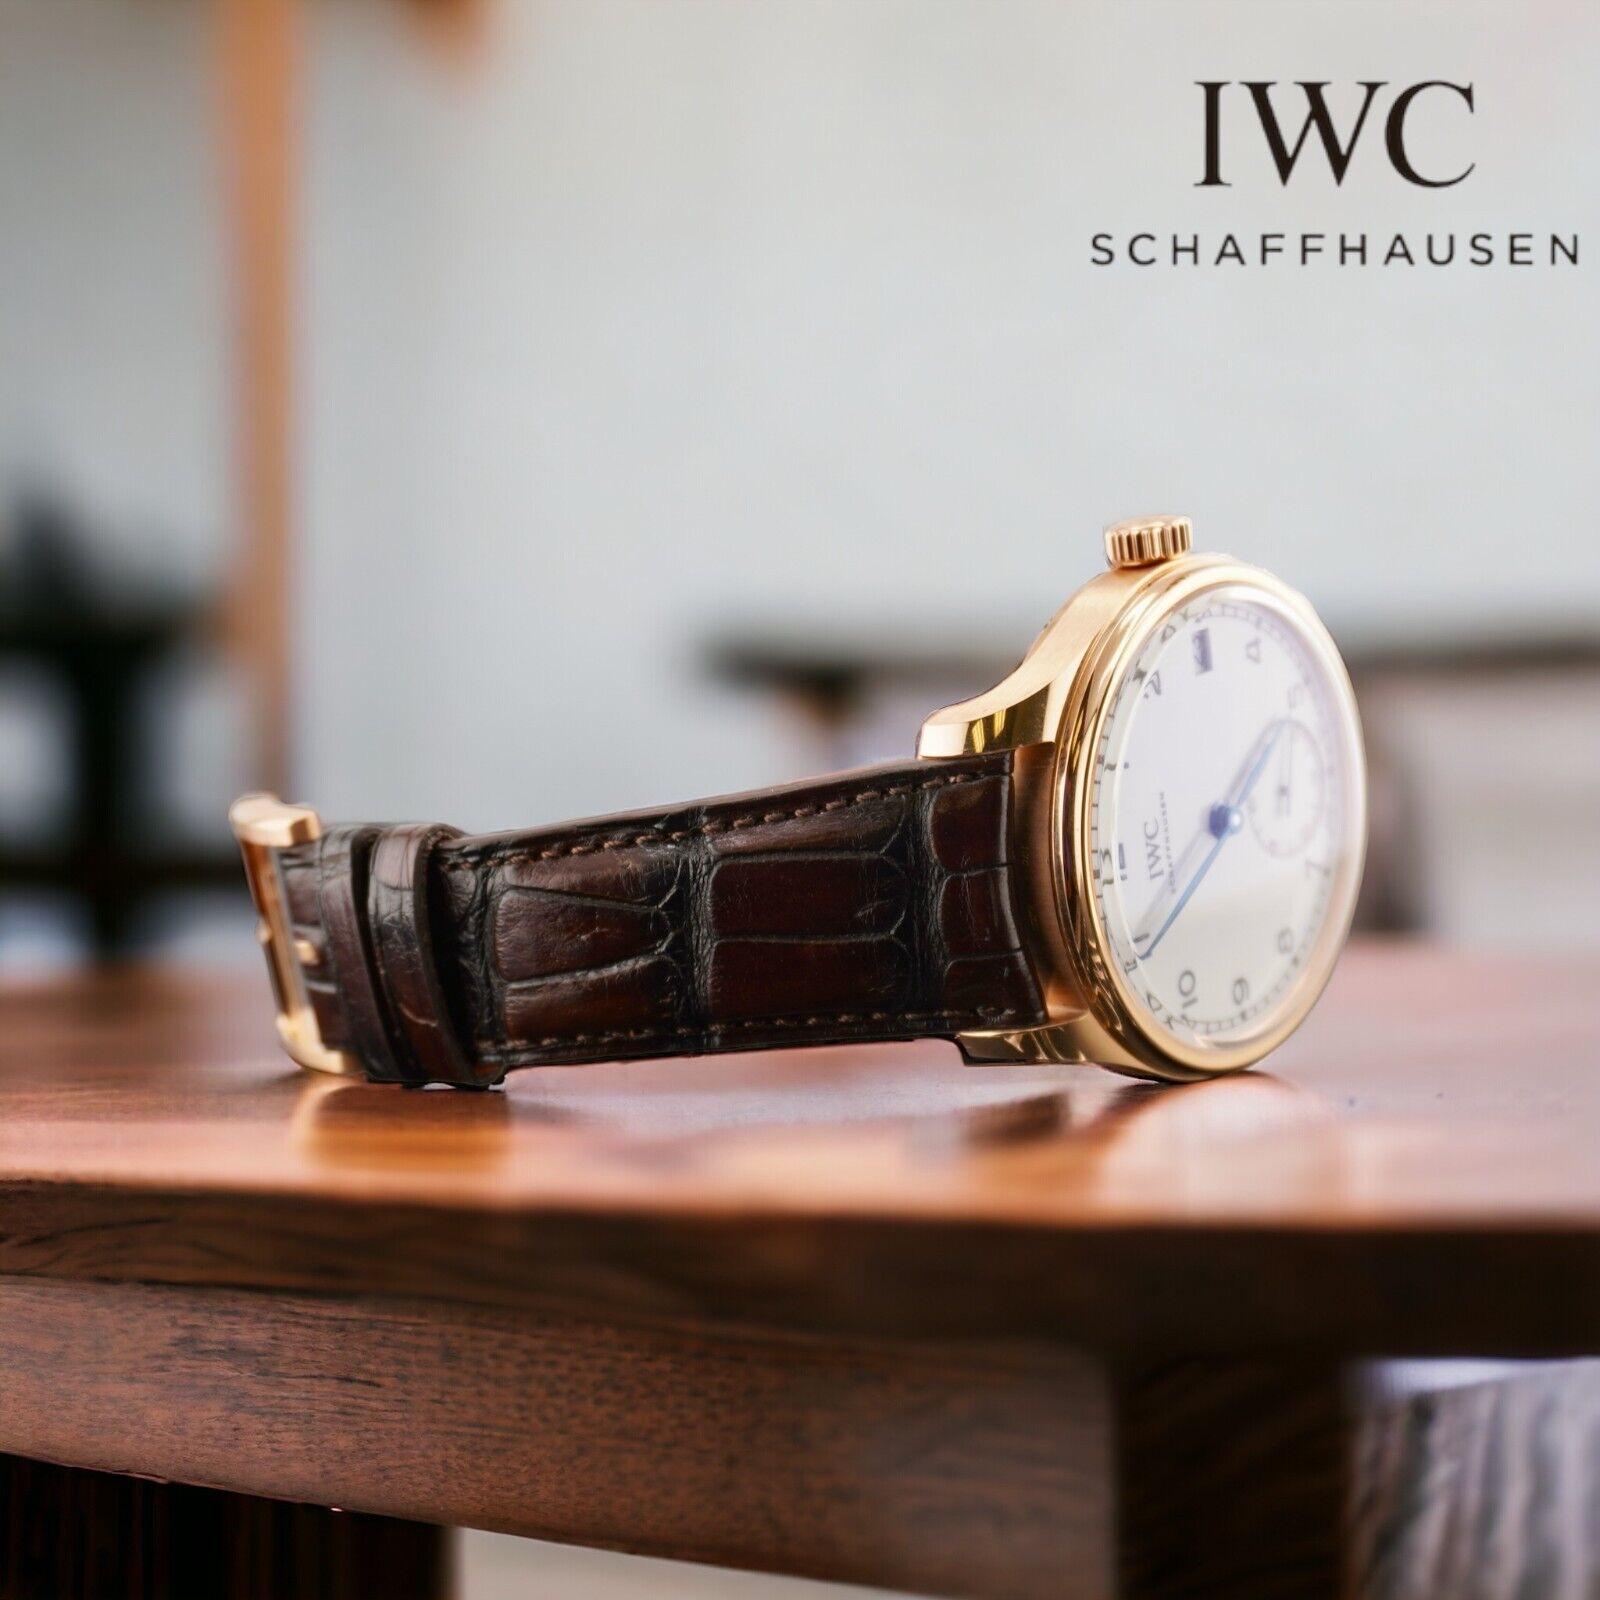 IWC 43MM Schaffhausen Portugieser Uhr

Gebraucht mit Original Box & Karte
100% authentische Echtheitskarte
Zustand - (Ausgezeichneter Zustand) - Siehe Bilder
Referenz der Uhr - IW510211
Modell - Schaffhausen Portugieser
Zifferblattfarbe -